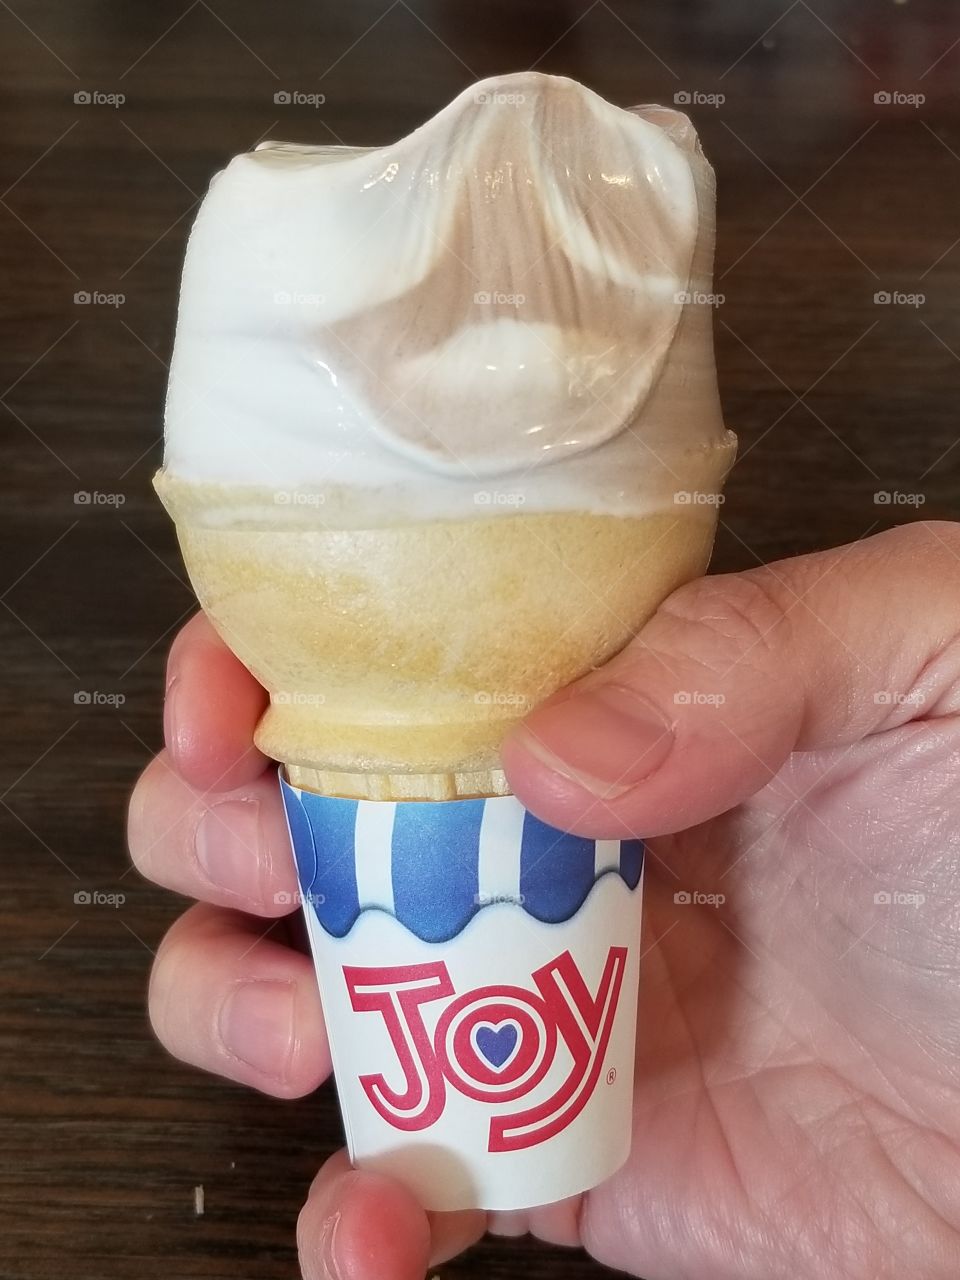 ice cream cone with joy